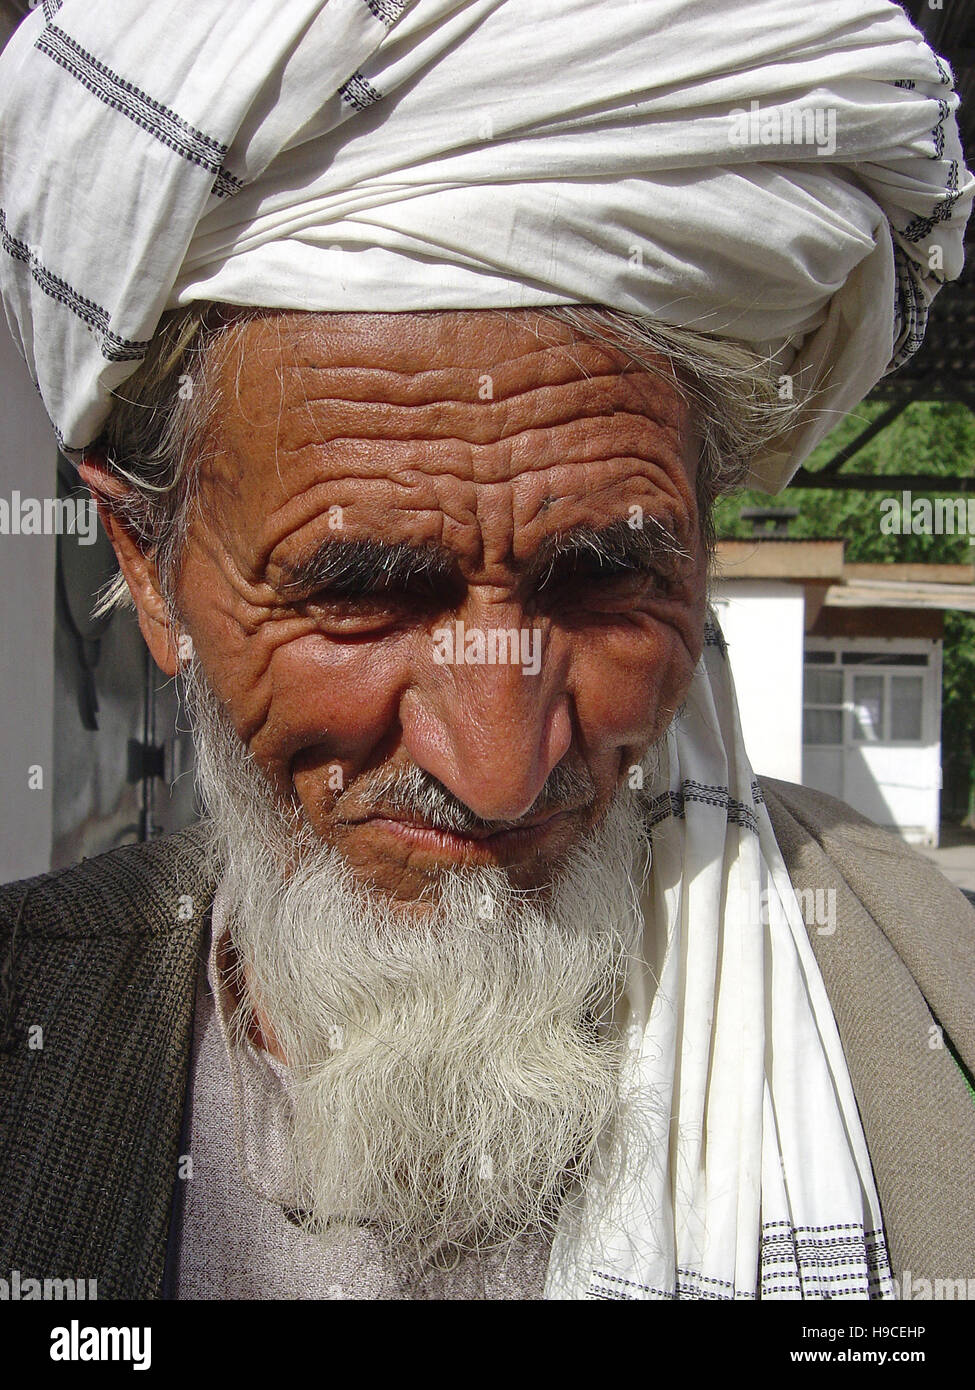 31 mai 2004 Portrait d'une ancienne tribu du port d'un turban (lungee) à l'intérieur du Centre Orthopédique Wazir Akbar Khan, dans le nord de Kaboul, Afghanistan. Banque D'Images